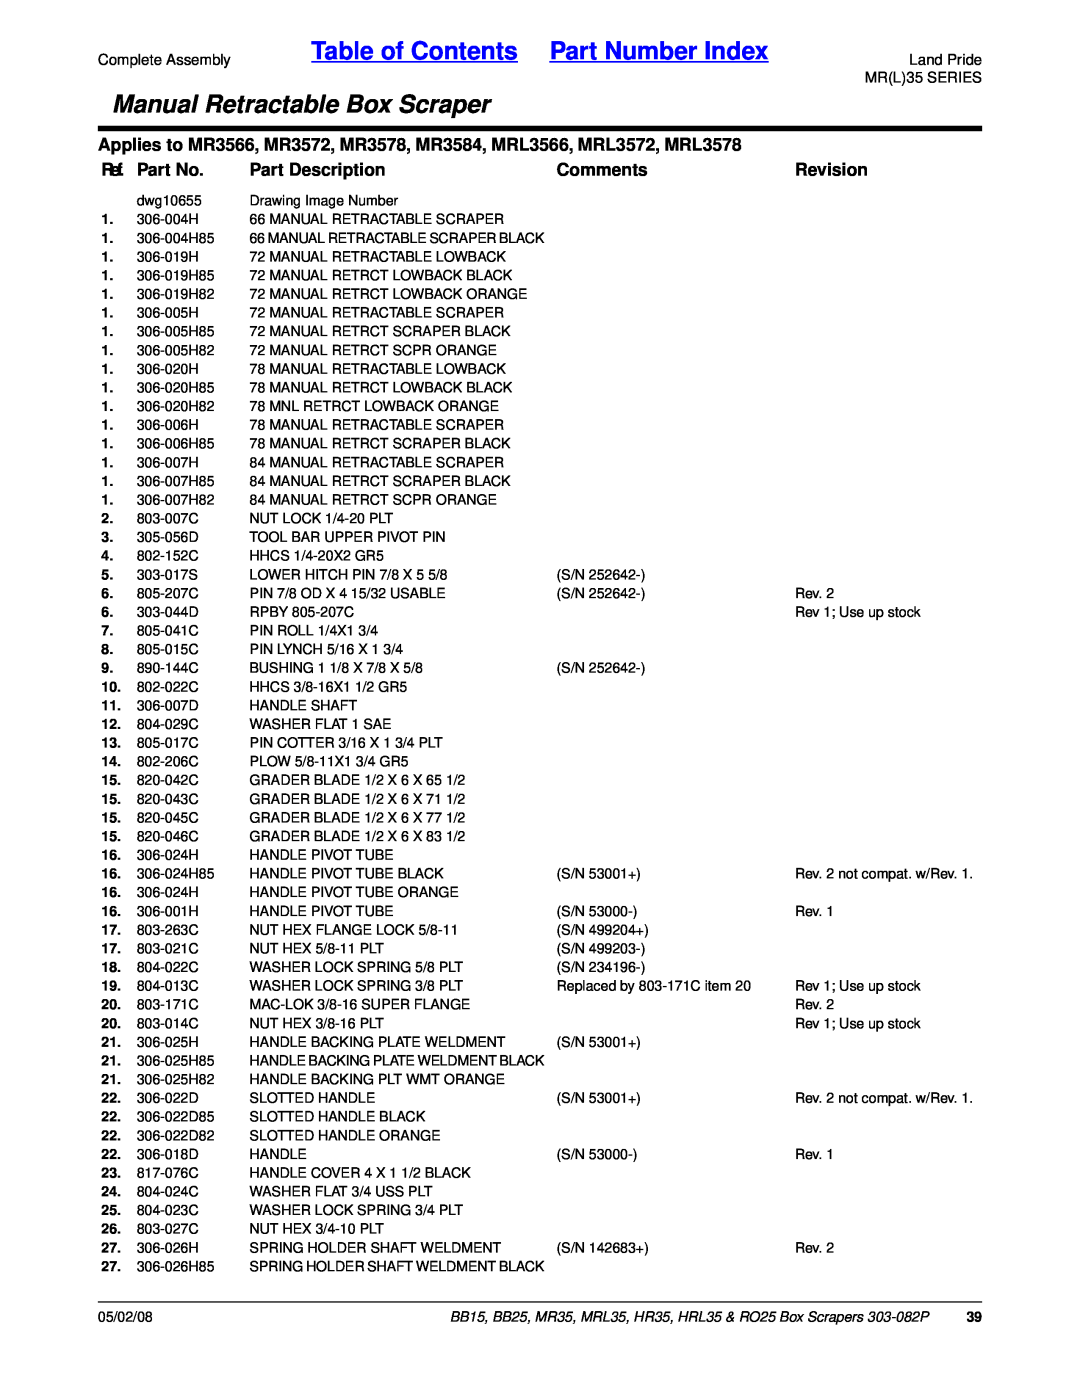 Land Pride RO25, MR35 Table of Contents Part Number Index, Manual Retractable Box Scraper, Ref. Part No, Part Description 